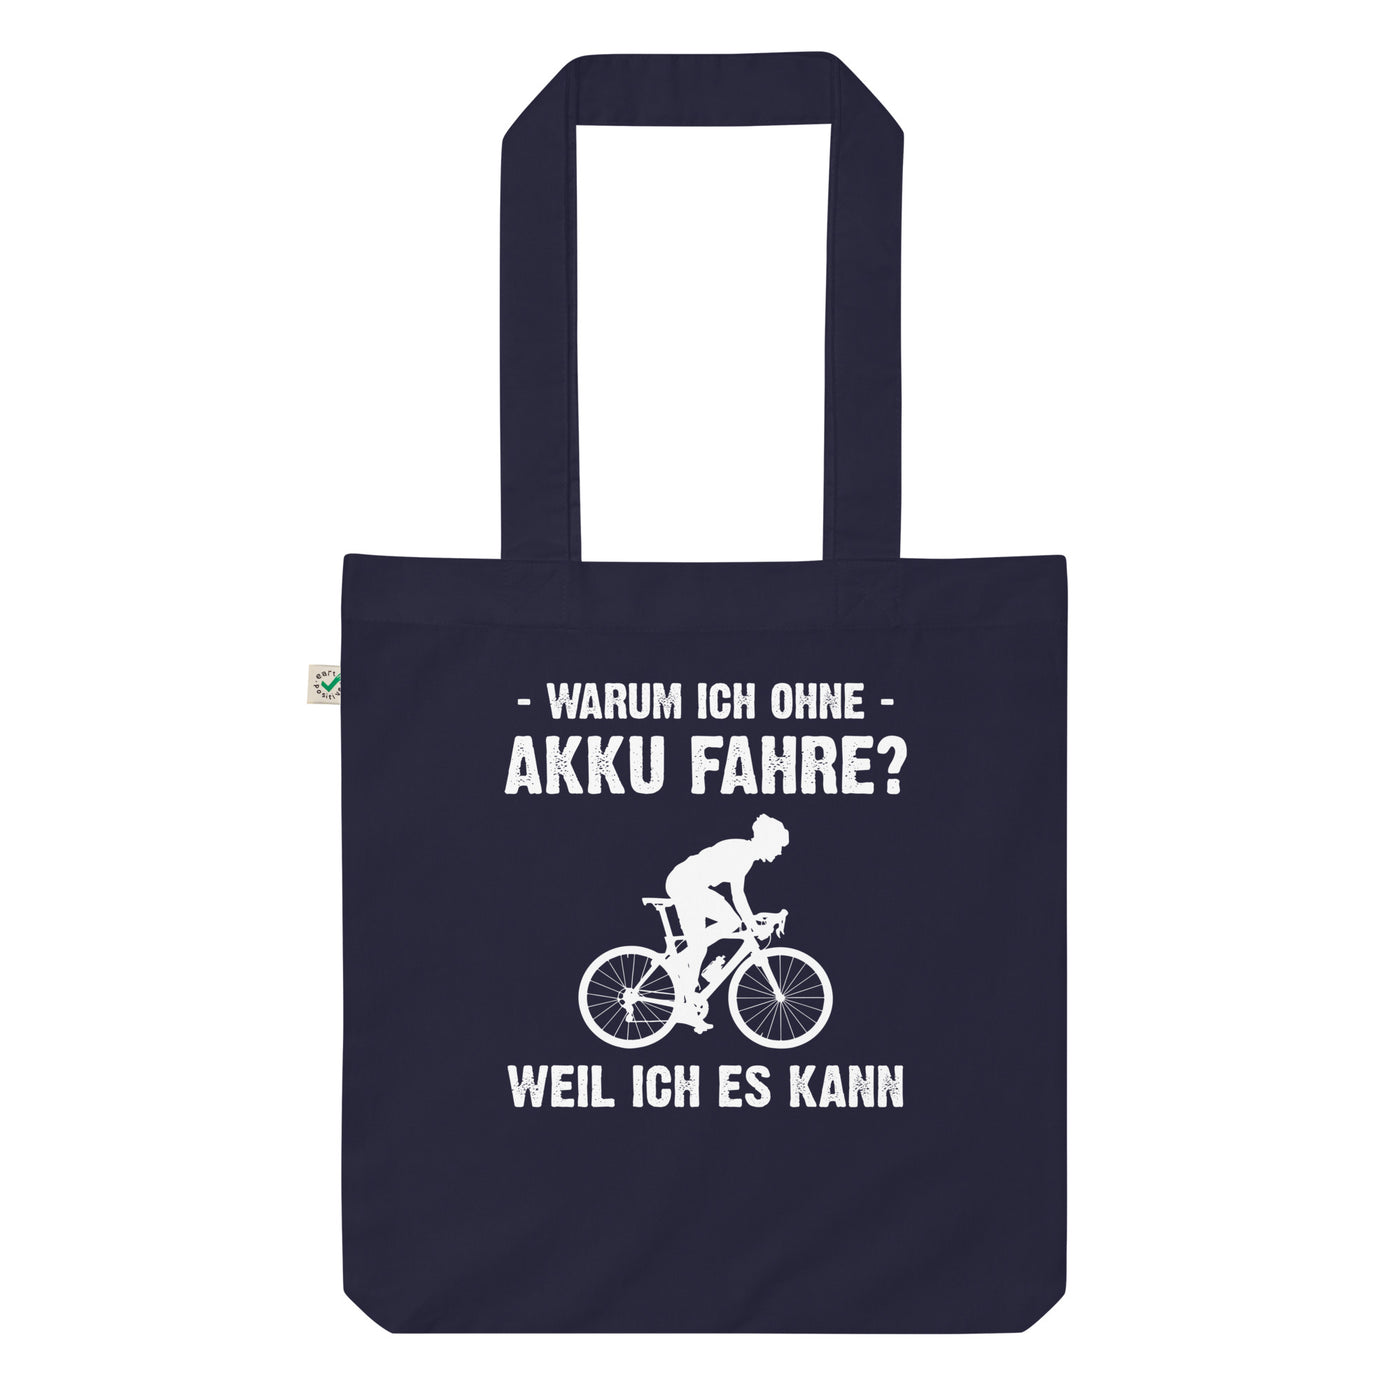 Warum Ich Ohne Akku Fahre Weil Ich Es Kann 2 - Organic Einkaufstasche fahrrad